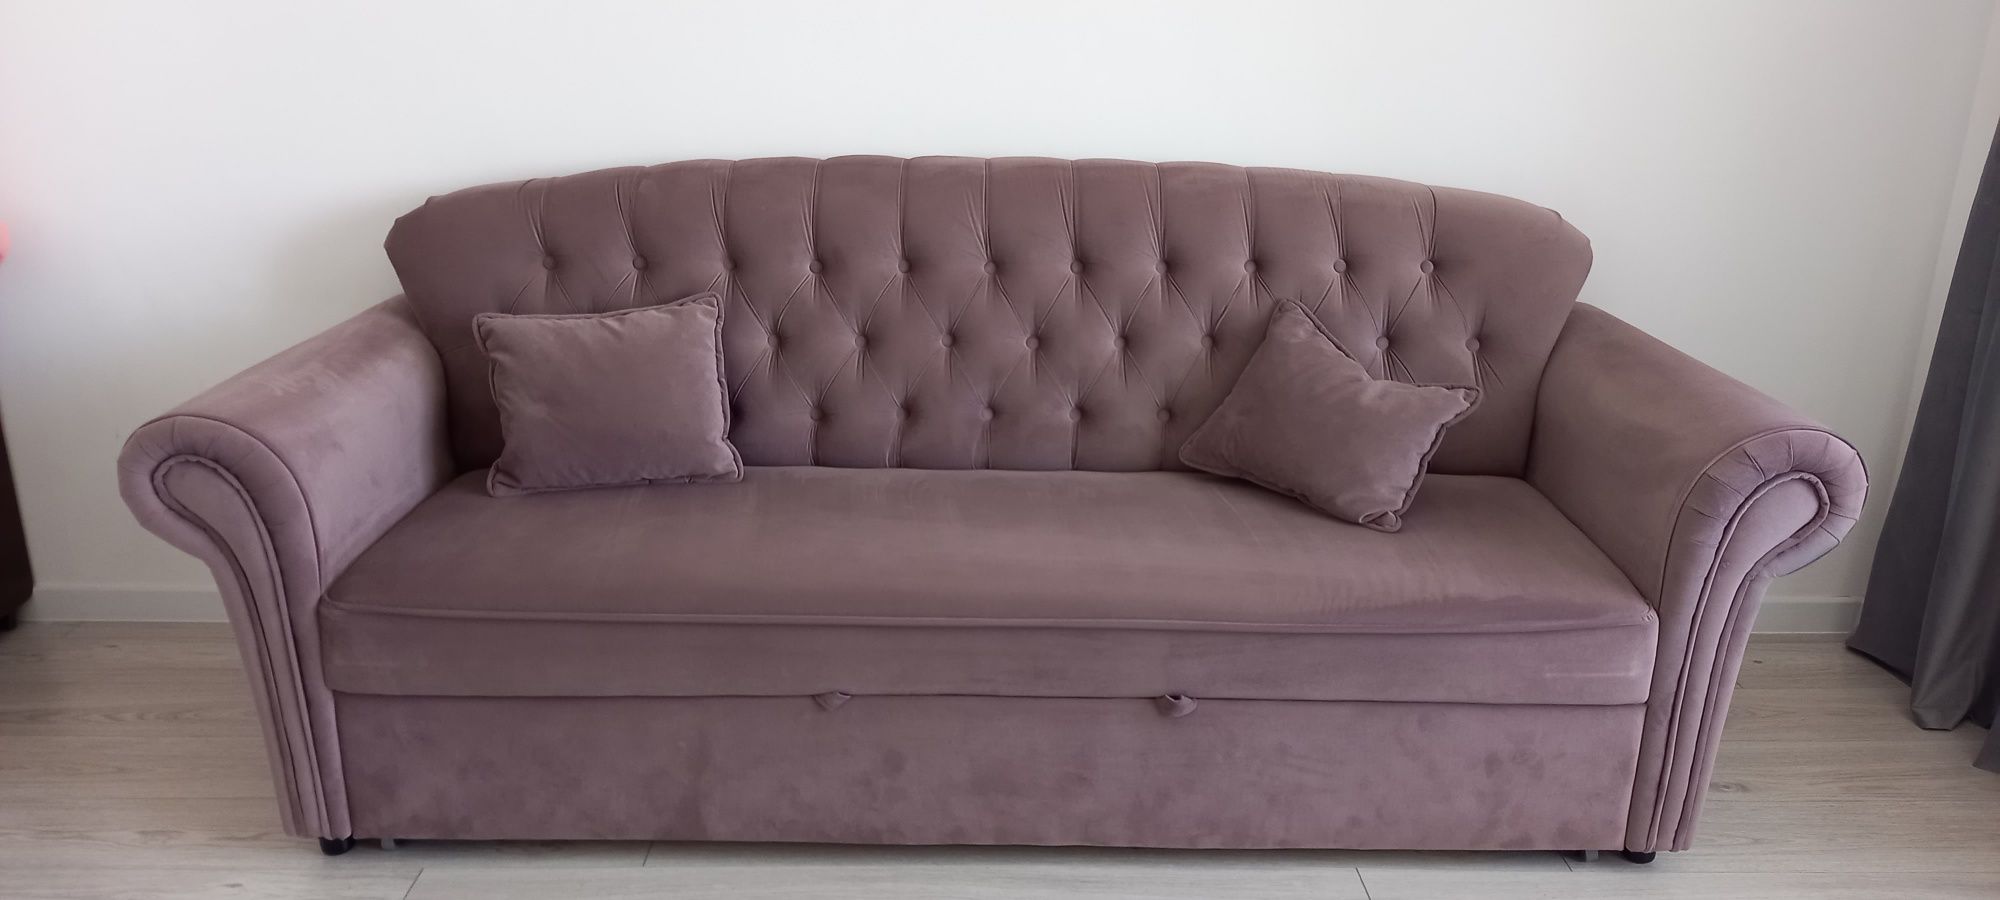 СРОЧНО продается диван раскладной в хорошем состоянии